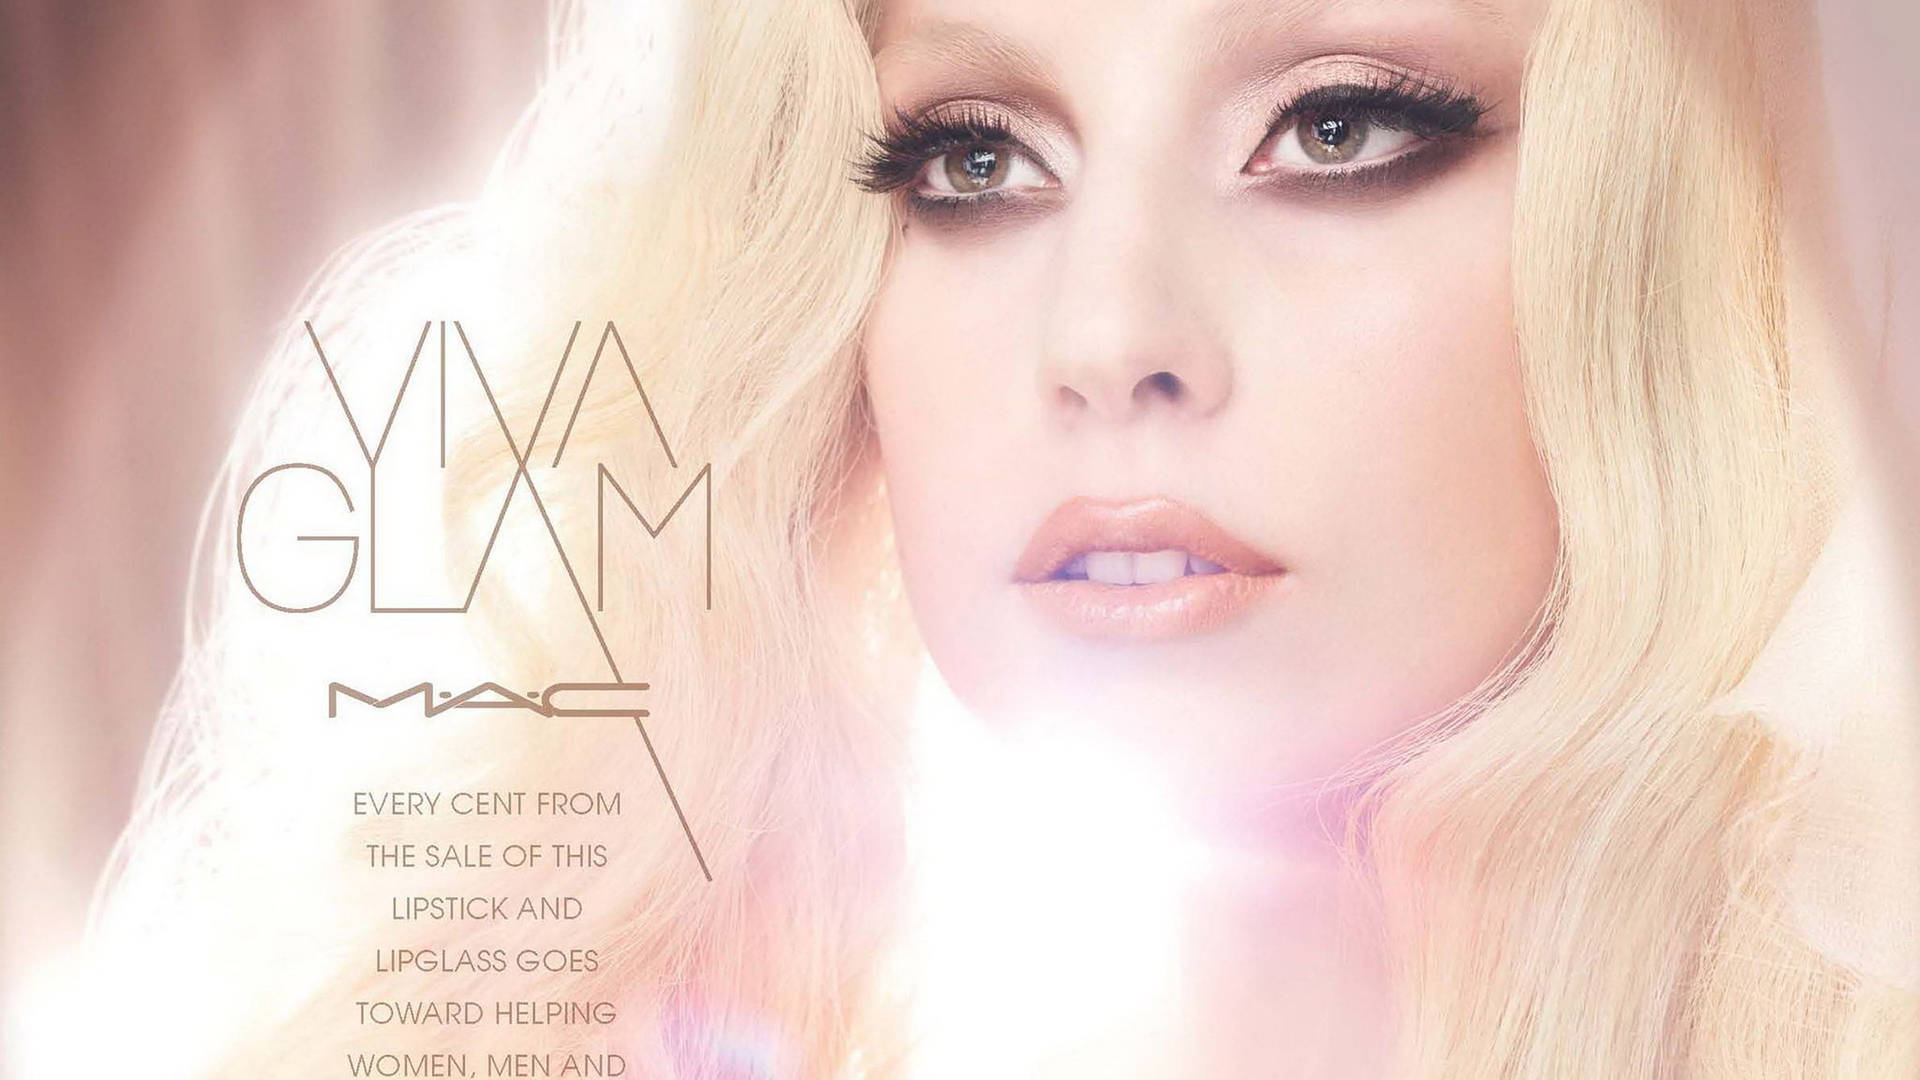 Jagskulle Vilja Ha En Bakgrundsbild Till Min Dator Eller Mobil Som Visar Mac Cosmetics Lady Gaga. Wallpaper